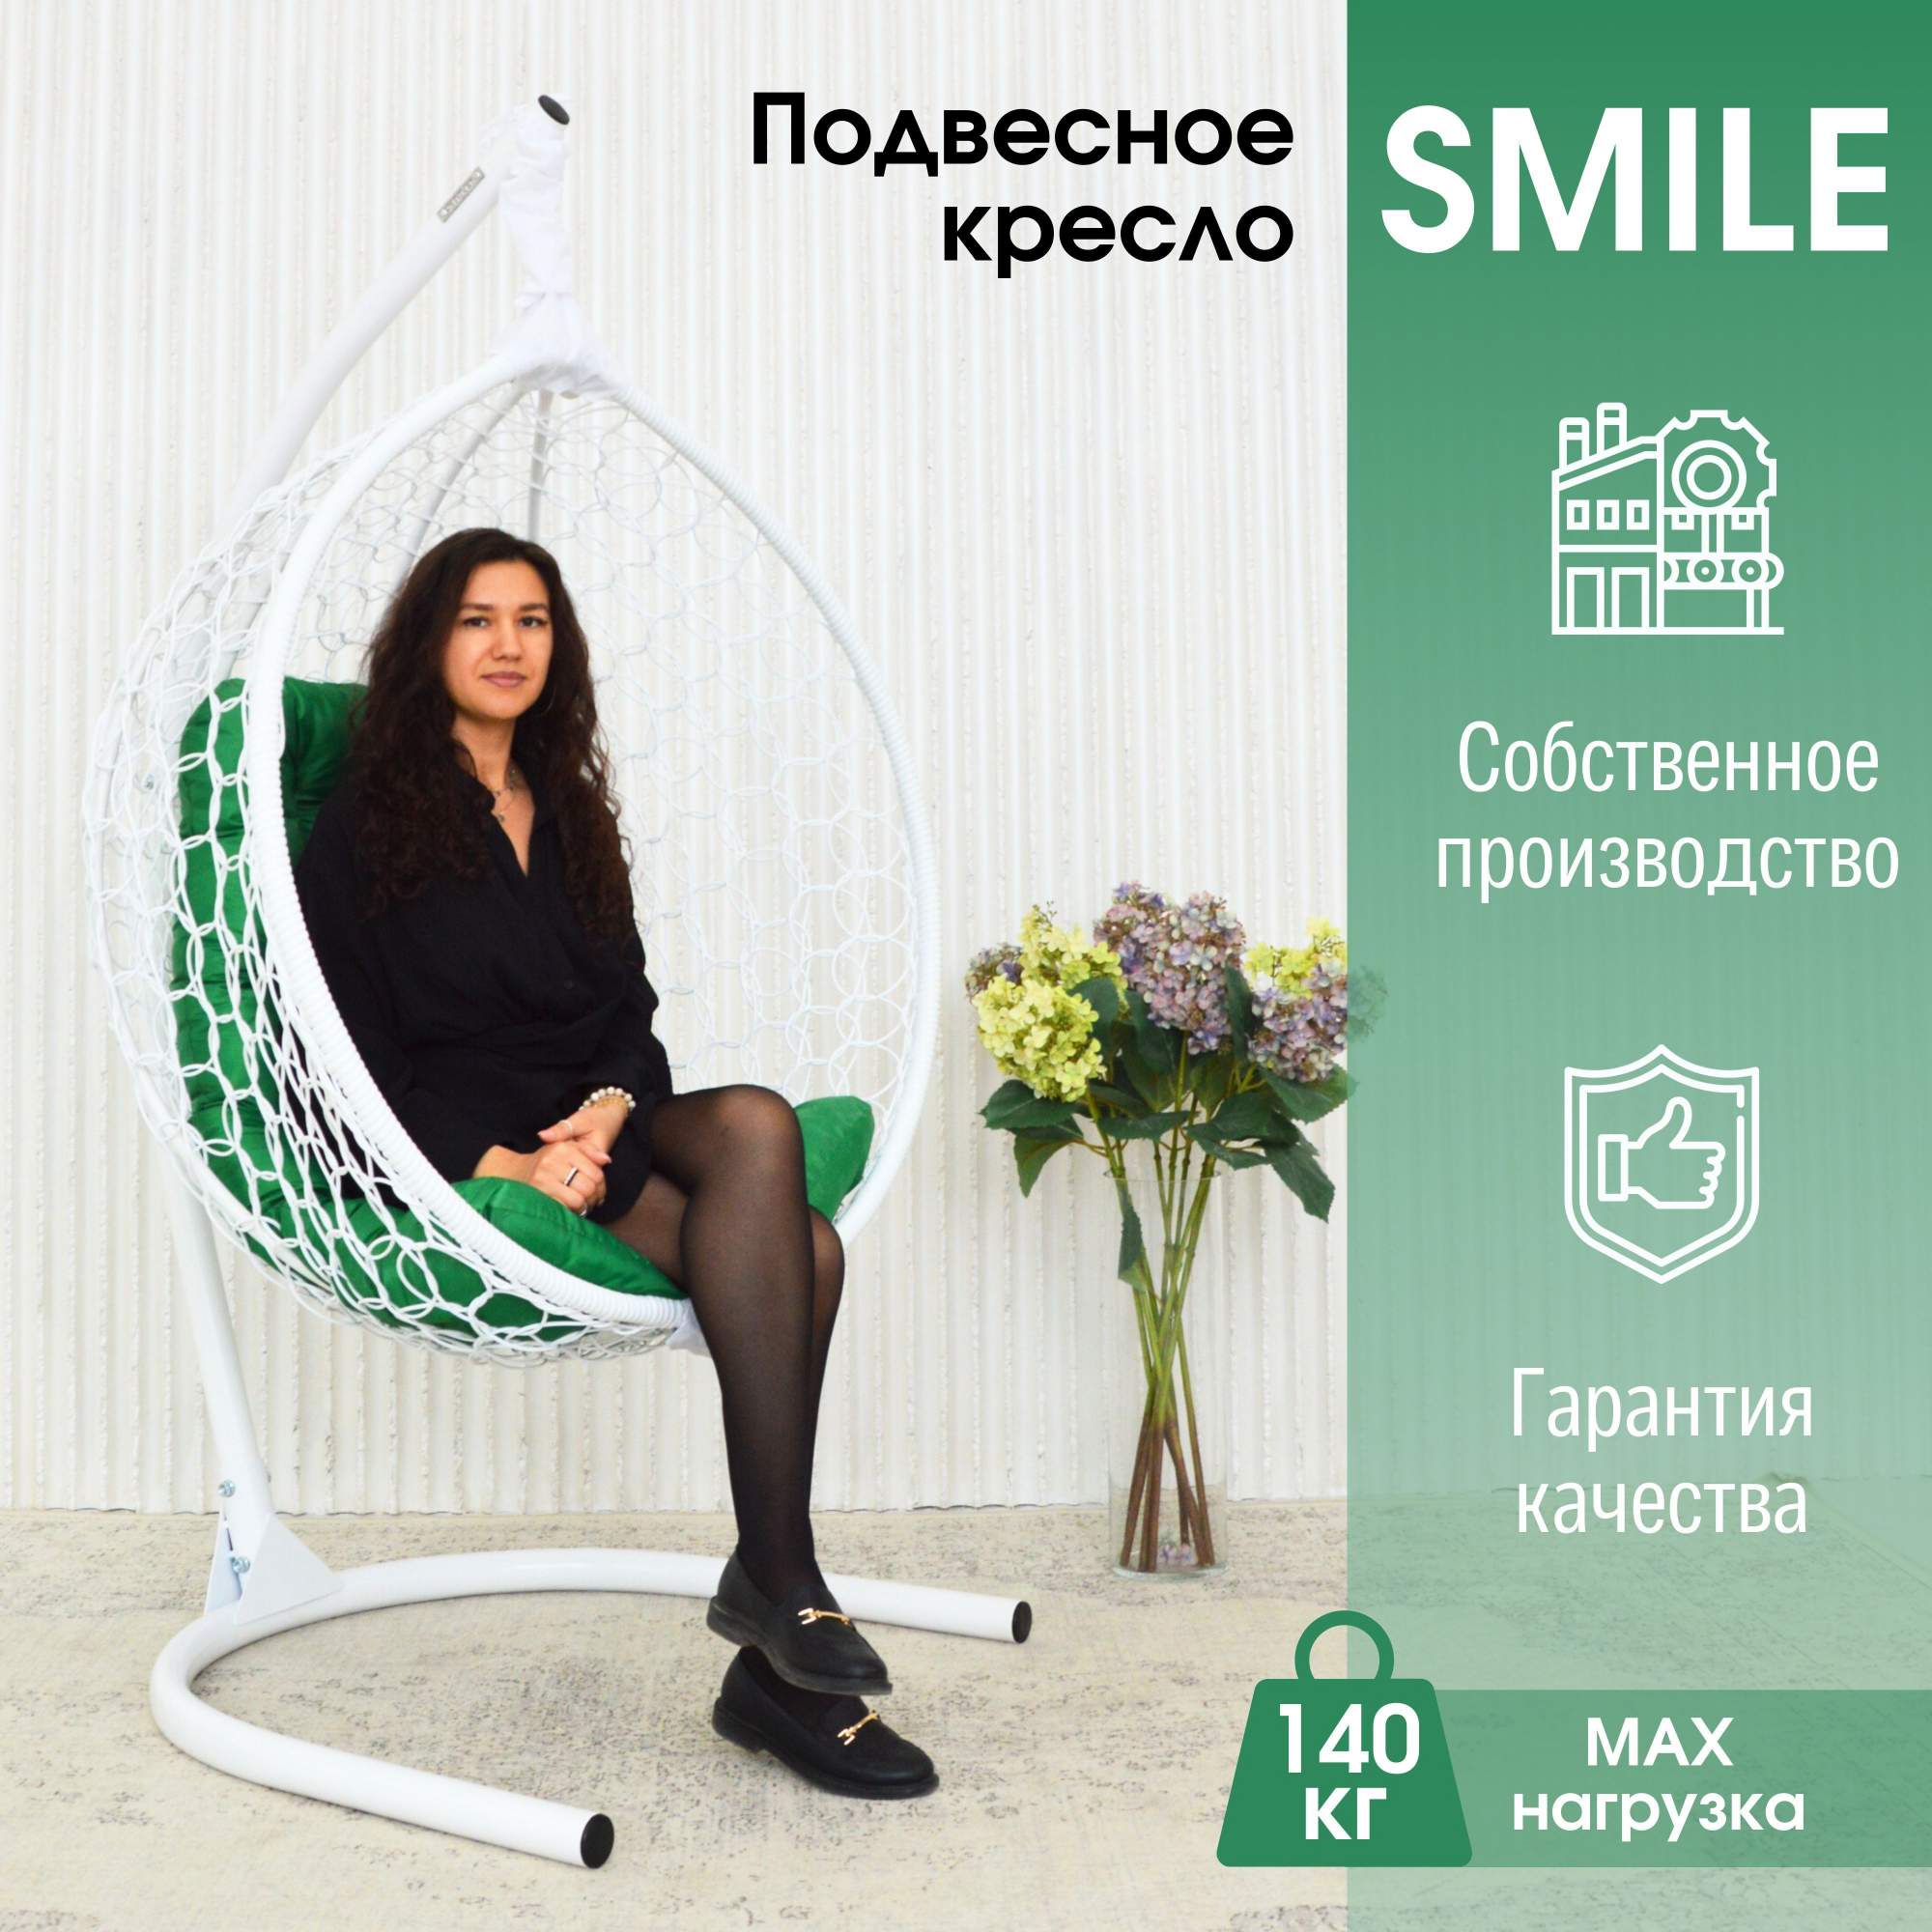 Садовое подвесное кресло белое STULER Smile Ажур KSMAR2PR2PO03TR зеленая подушка